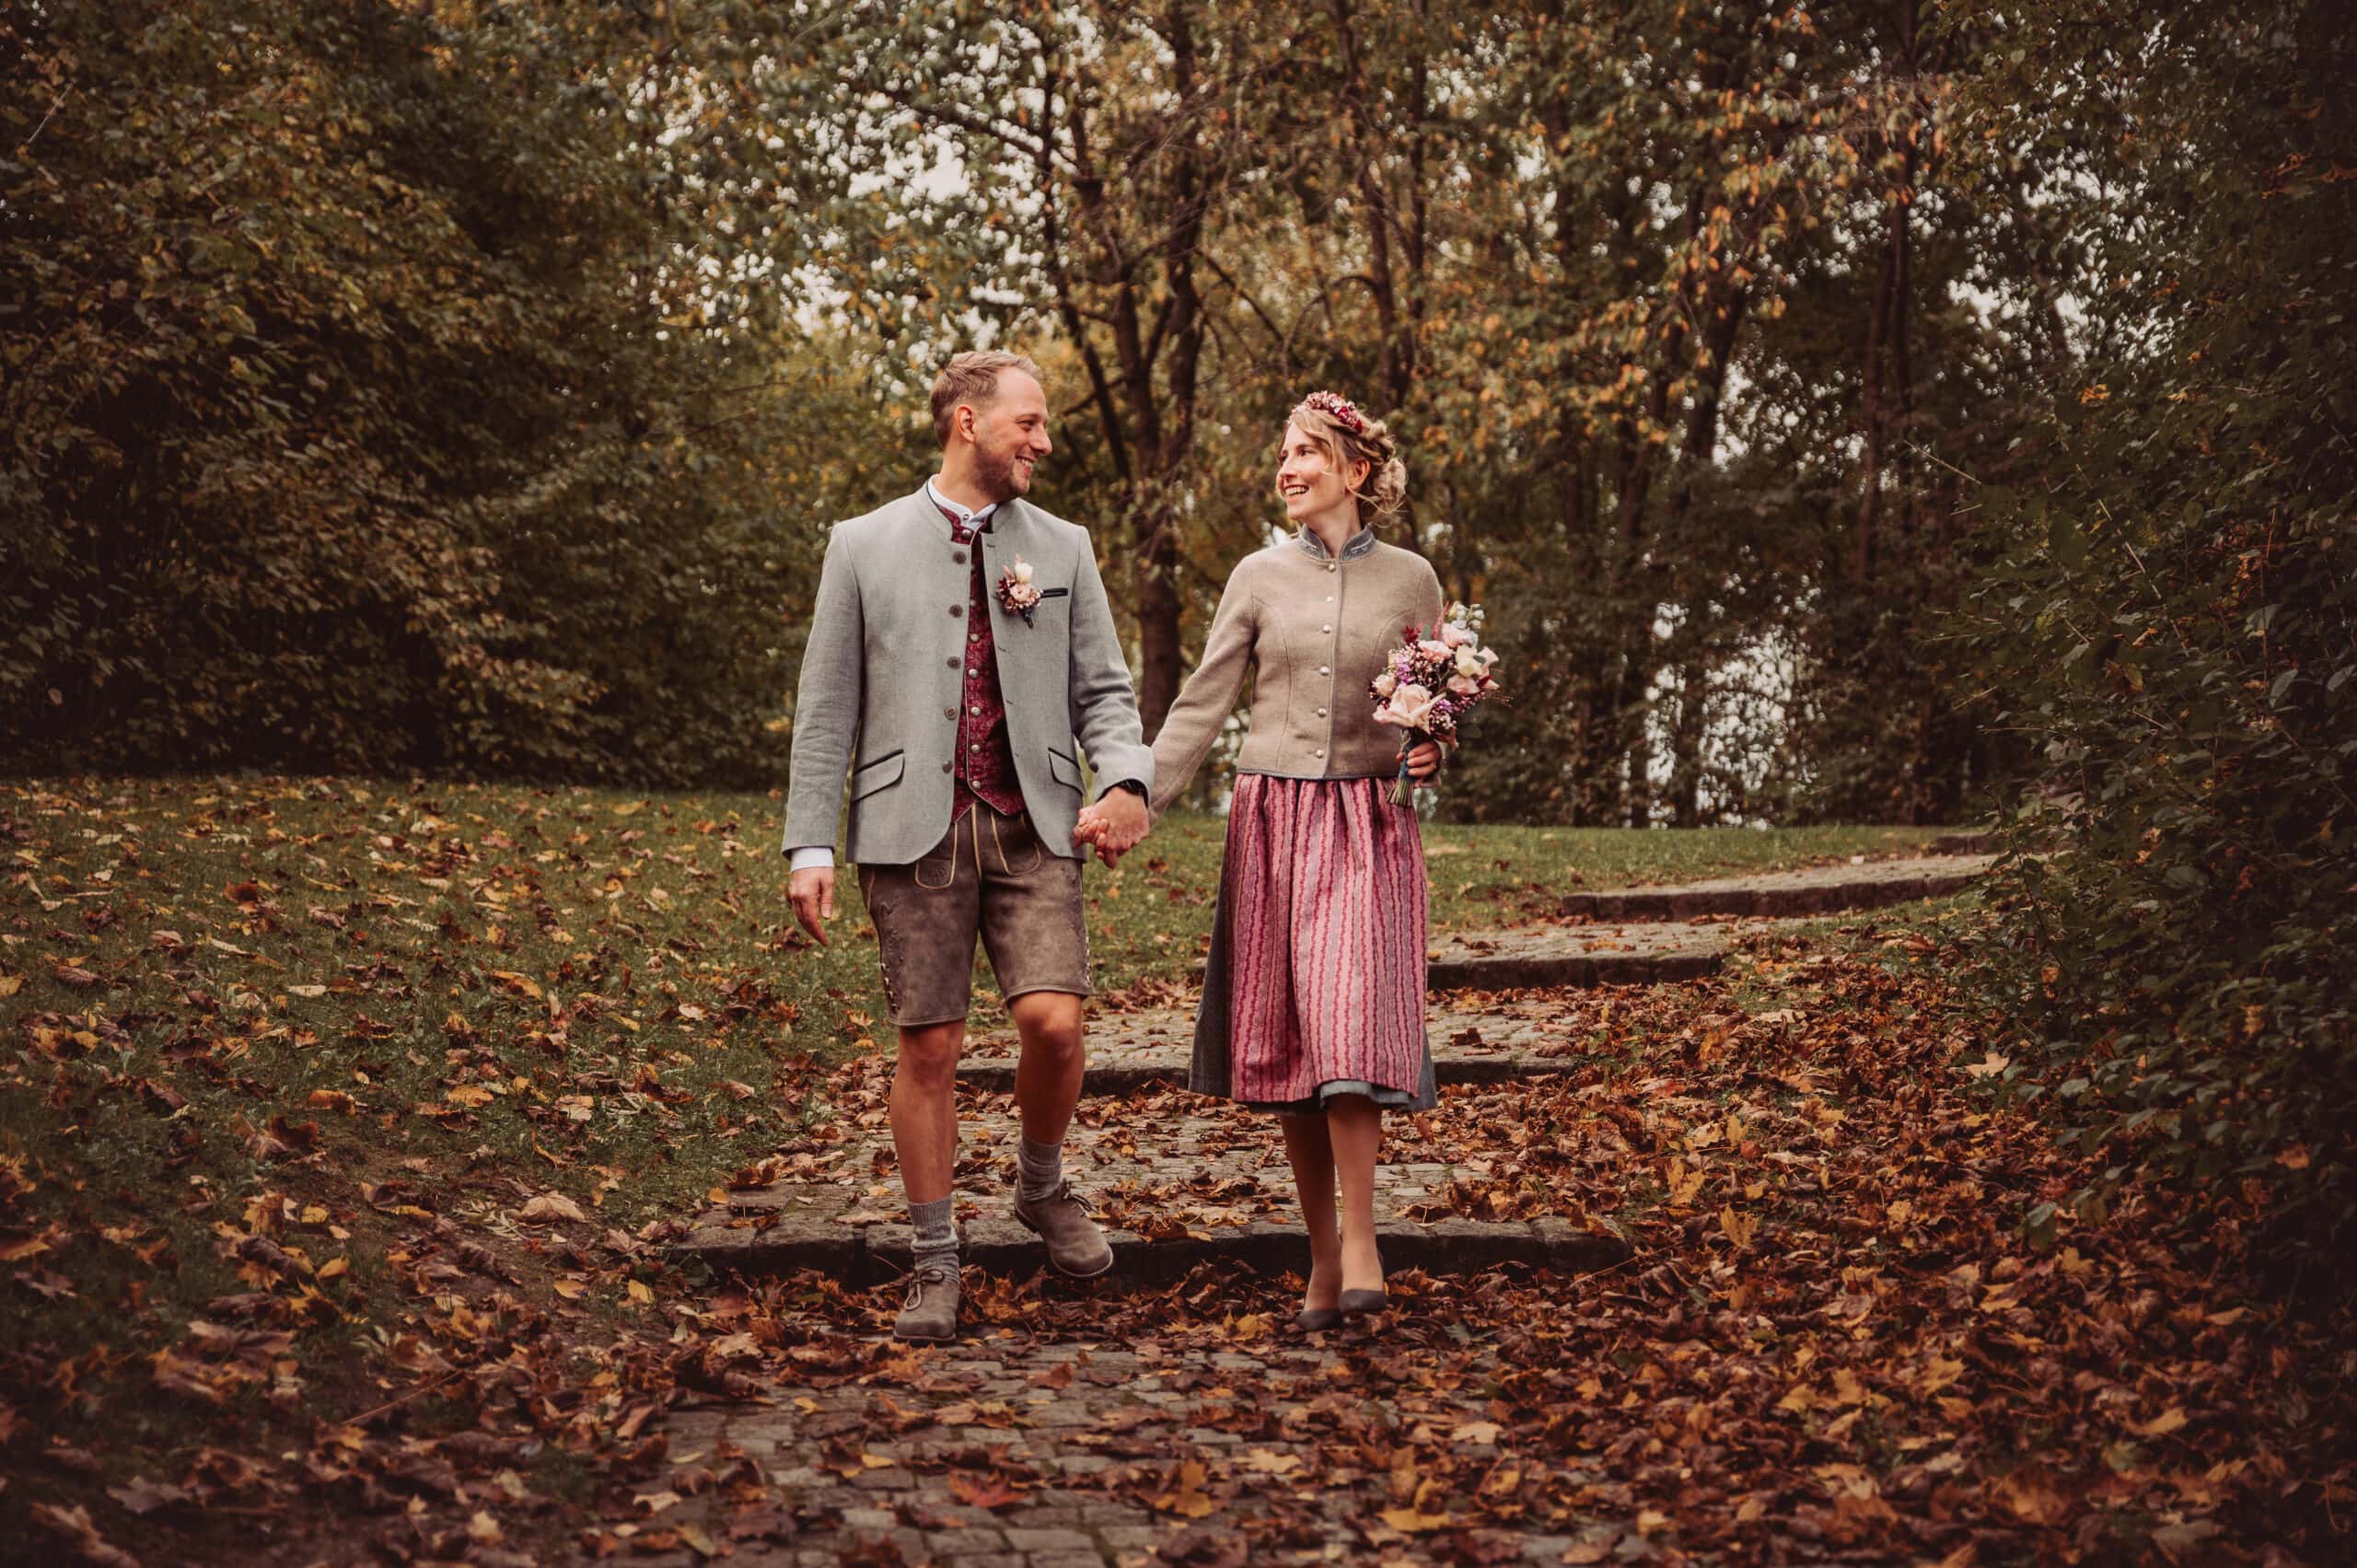 Brautpaar spaziert durch bunte Blätter im Herbst